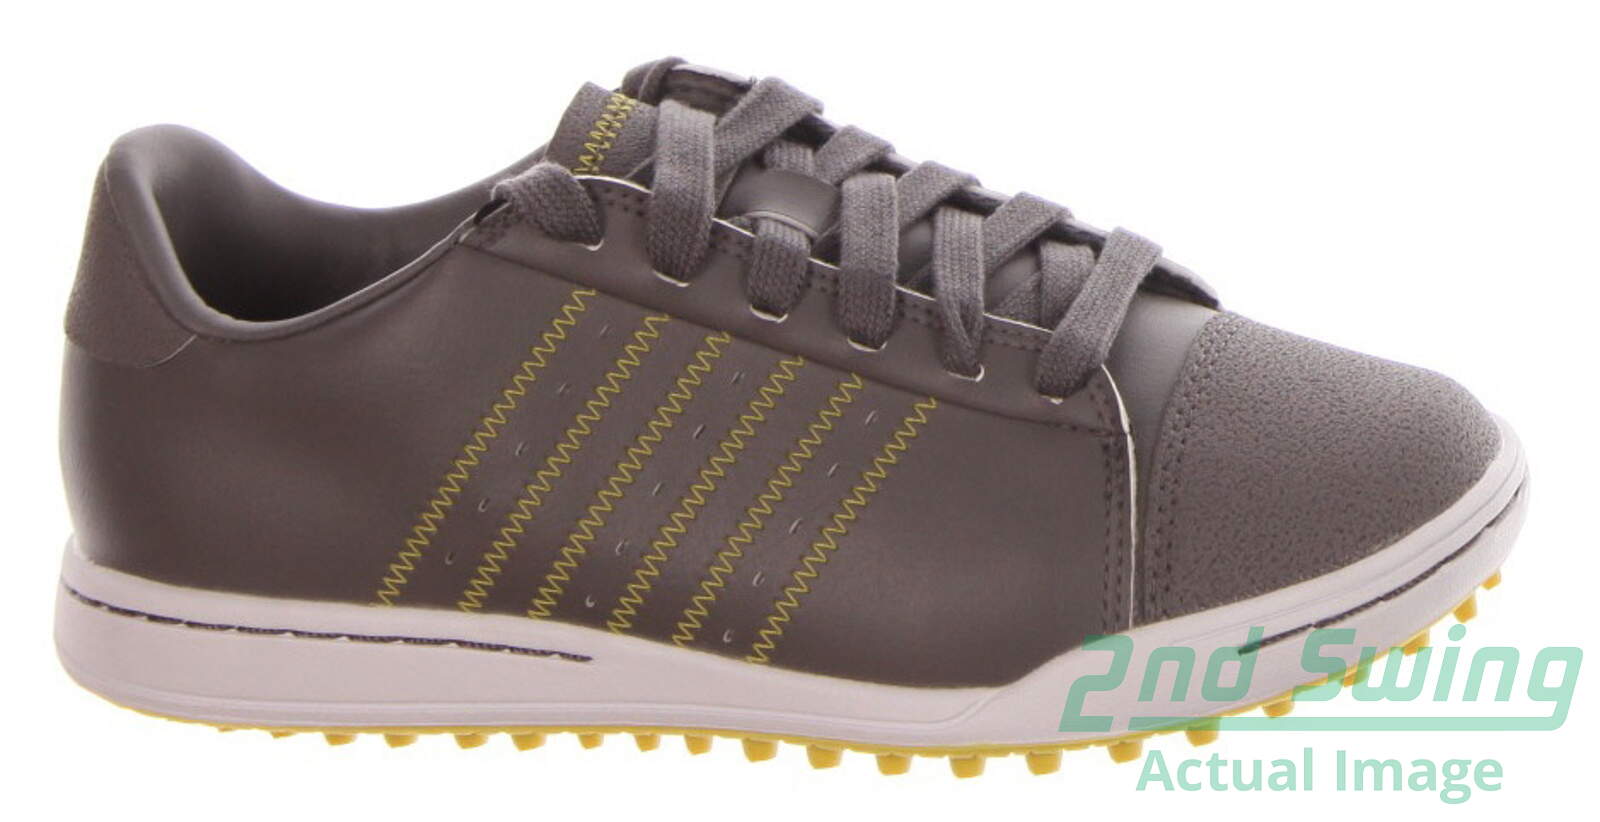 adidas boys golf shoes